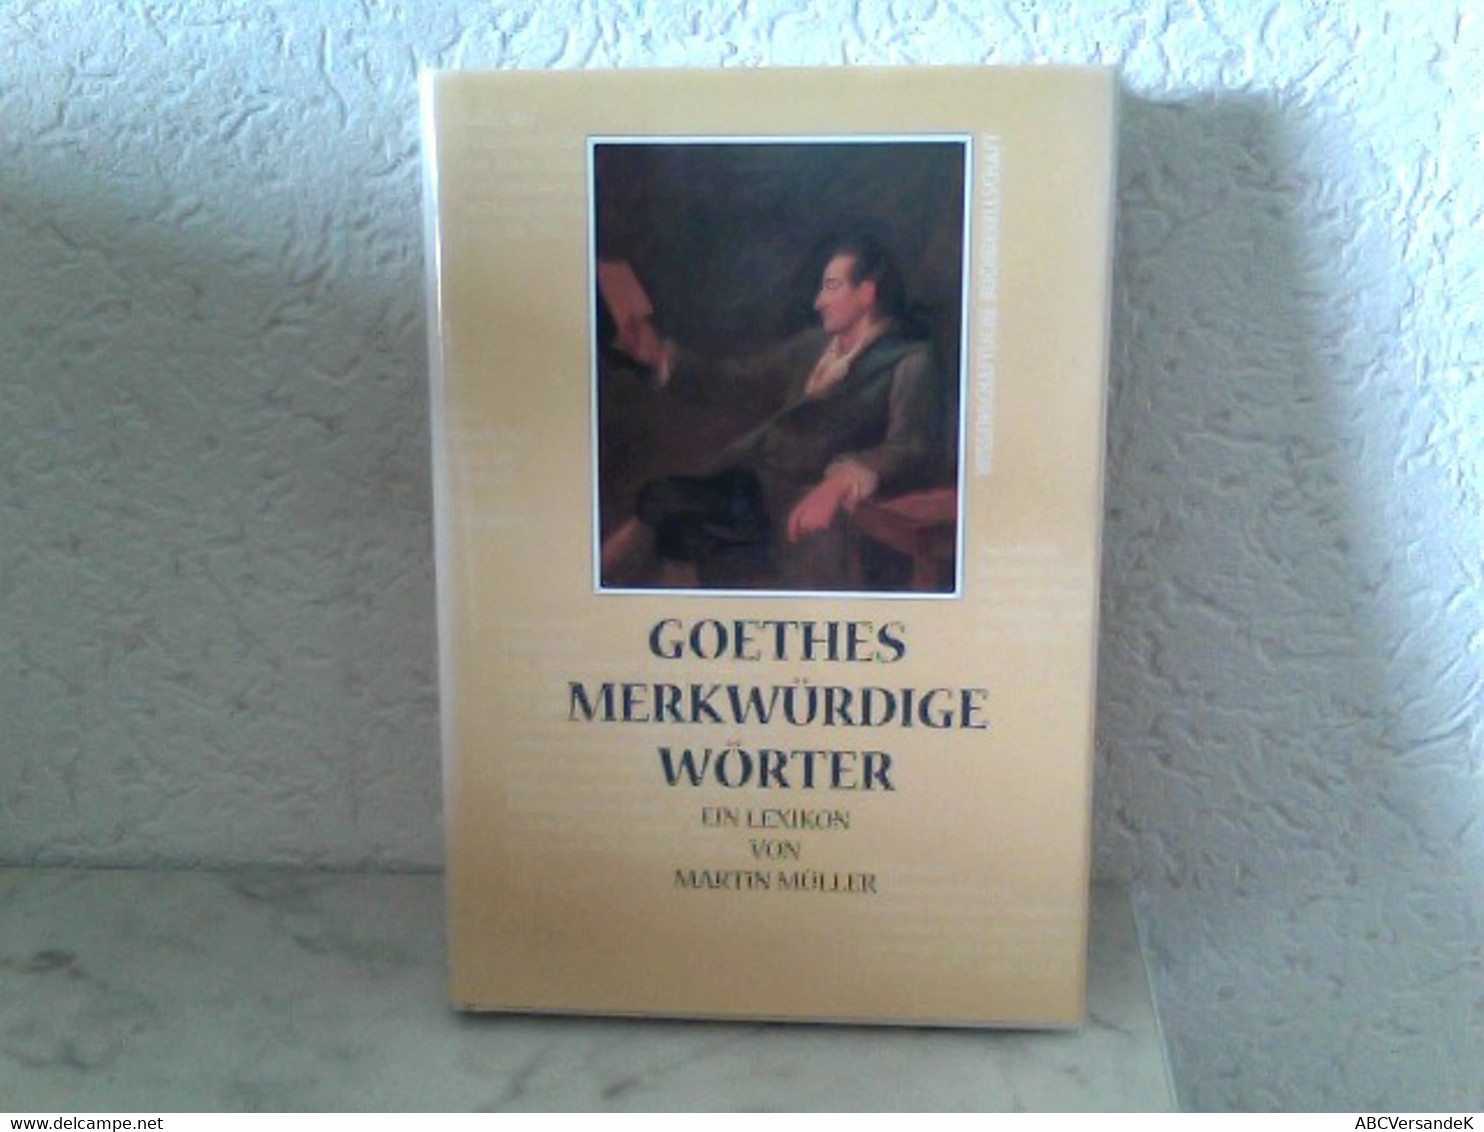 Goethes Merkwürdige Wörter - Ein Lexikon - Lexicons